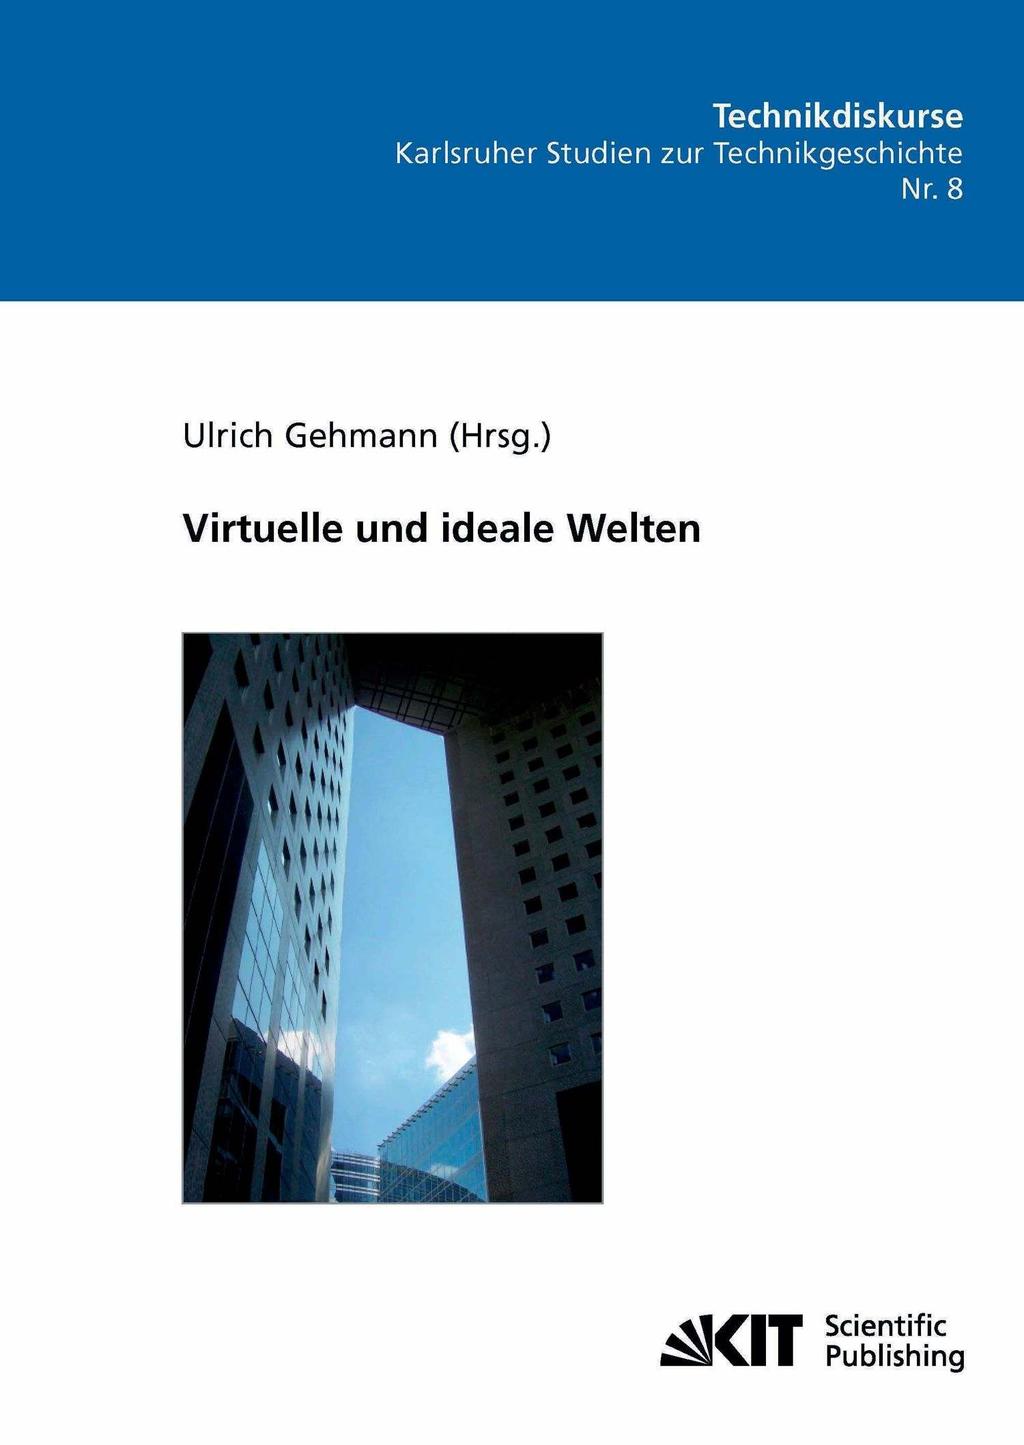 Virtuelle und ideale Welten   PDF Free Download